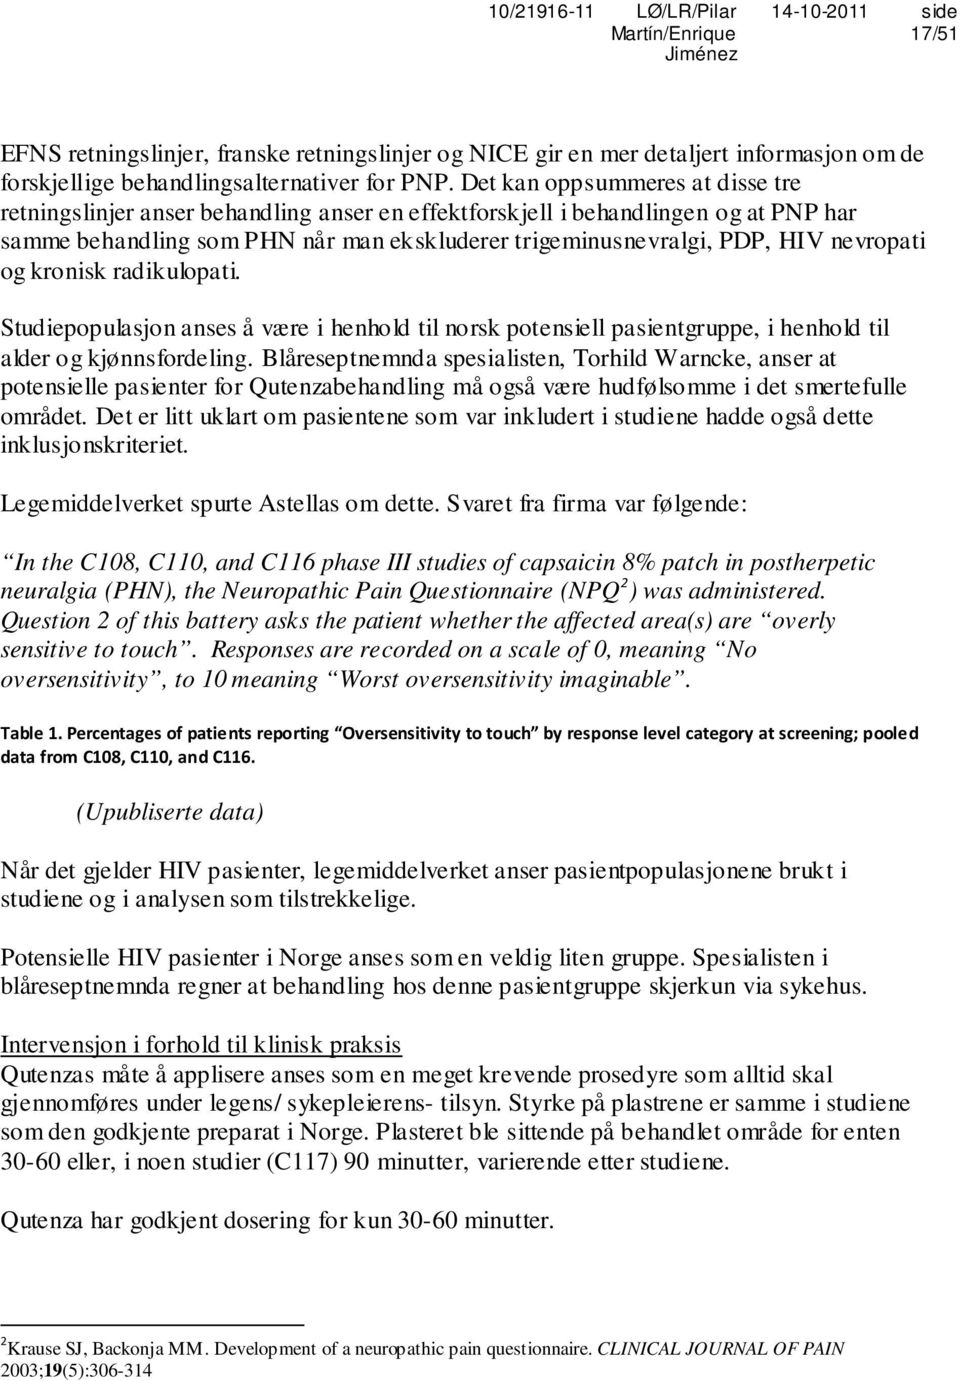 Refusjonsrapport. Vurdering av søknad om forhåndsgodkjent refusjon Statens  legemiddelverk - PDF Gratis nedlasting